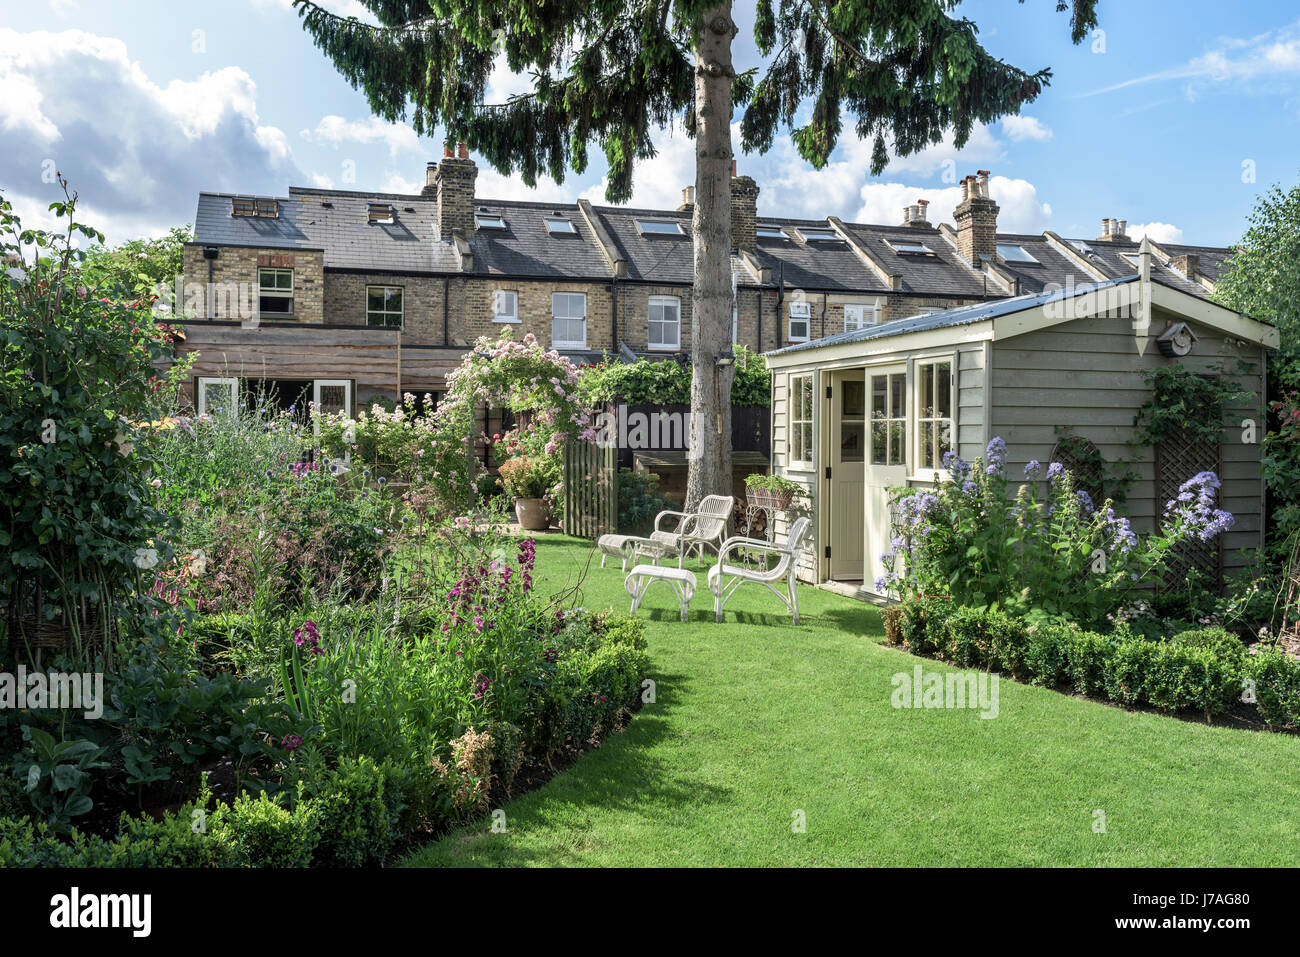 Dans un pavillon jardin anglais avec des meubles en osier et les pelouses bien entretenues Banque D'Images